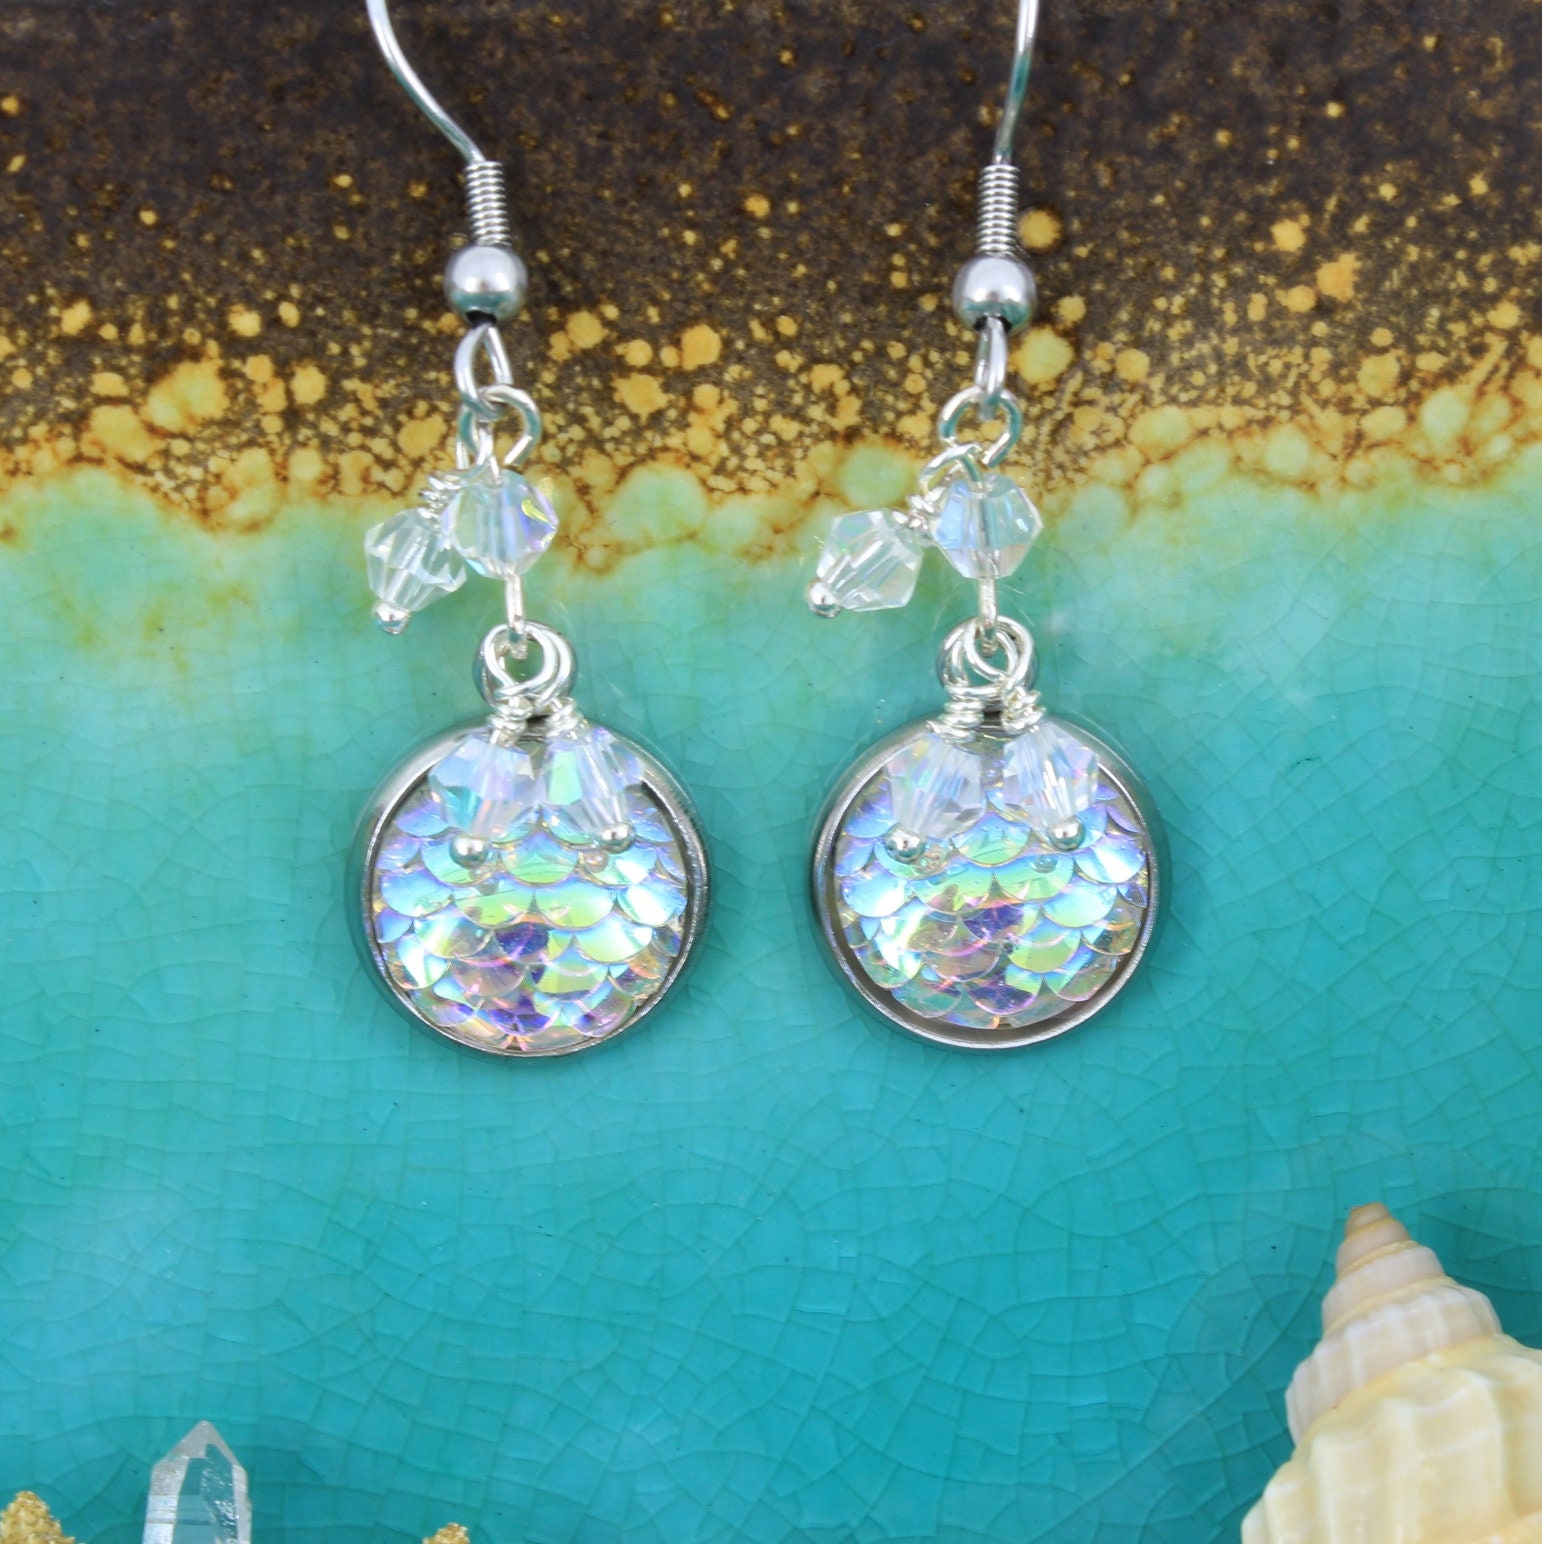 Mermaid earrings, Fish scale earrings - product images  of 